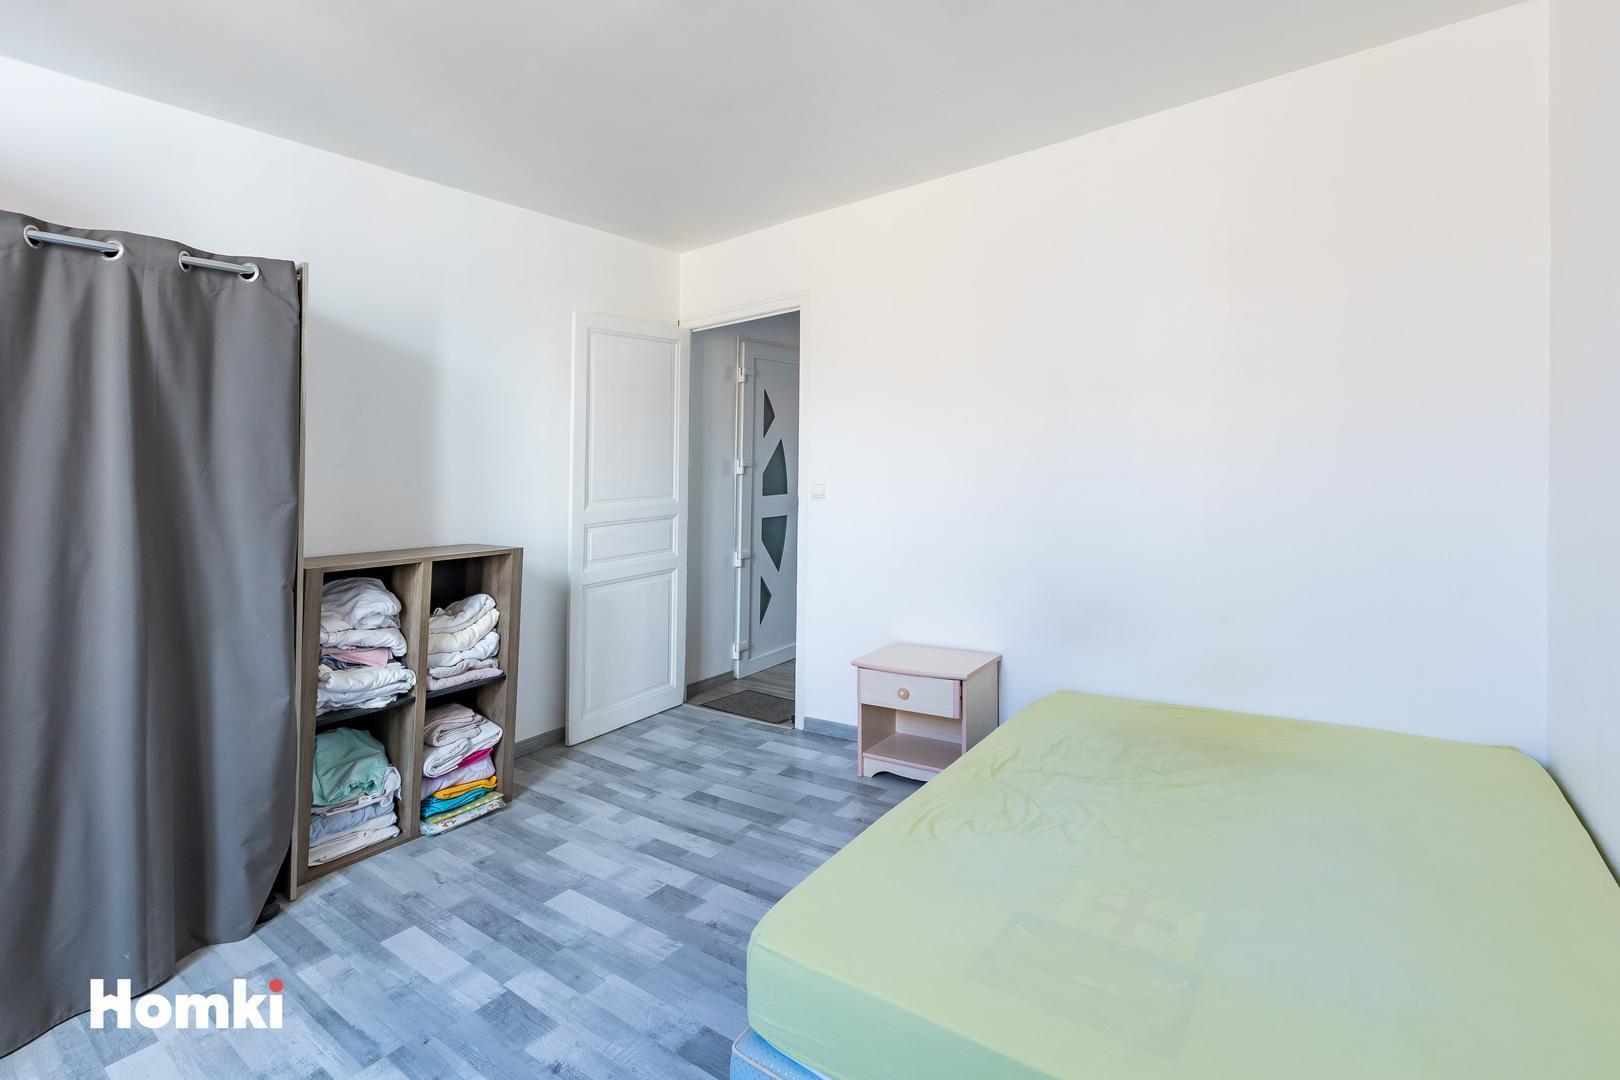 Homki - Vente Appartement  de 70.0 m² à Béziers 34500